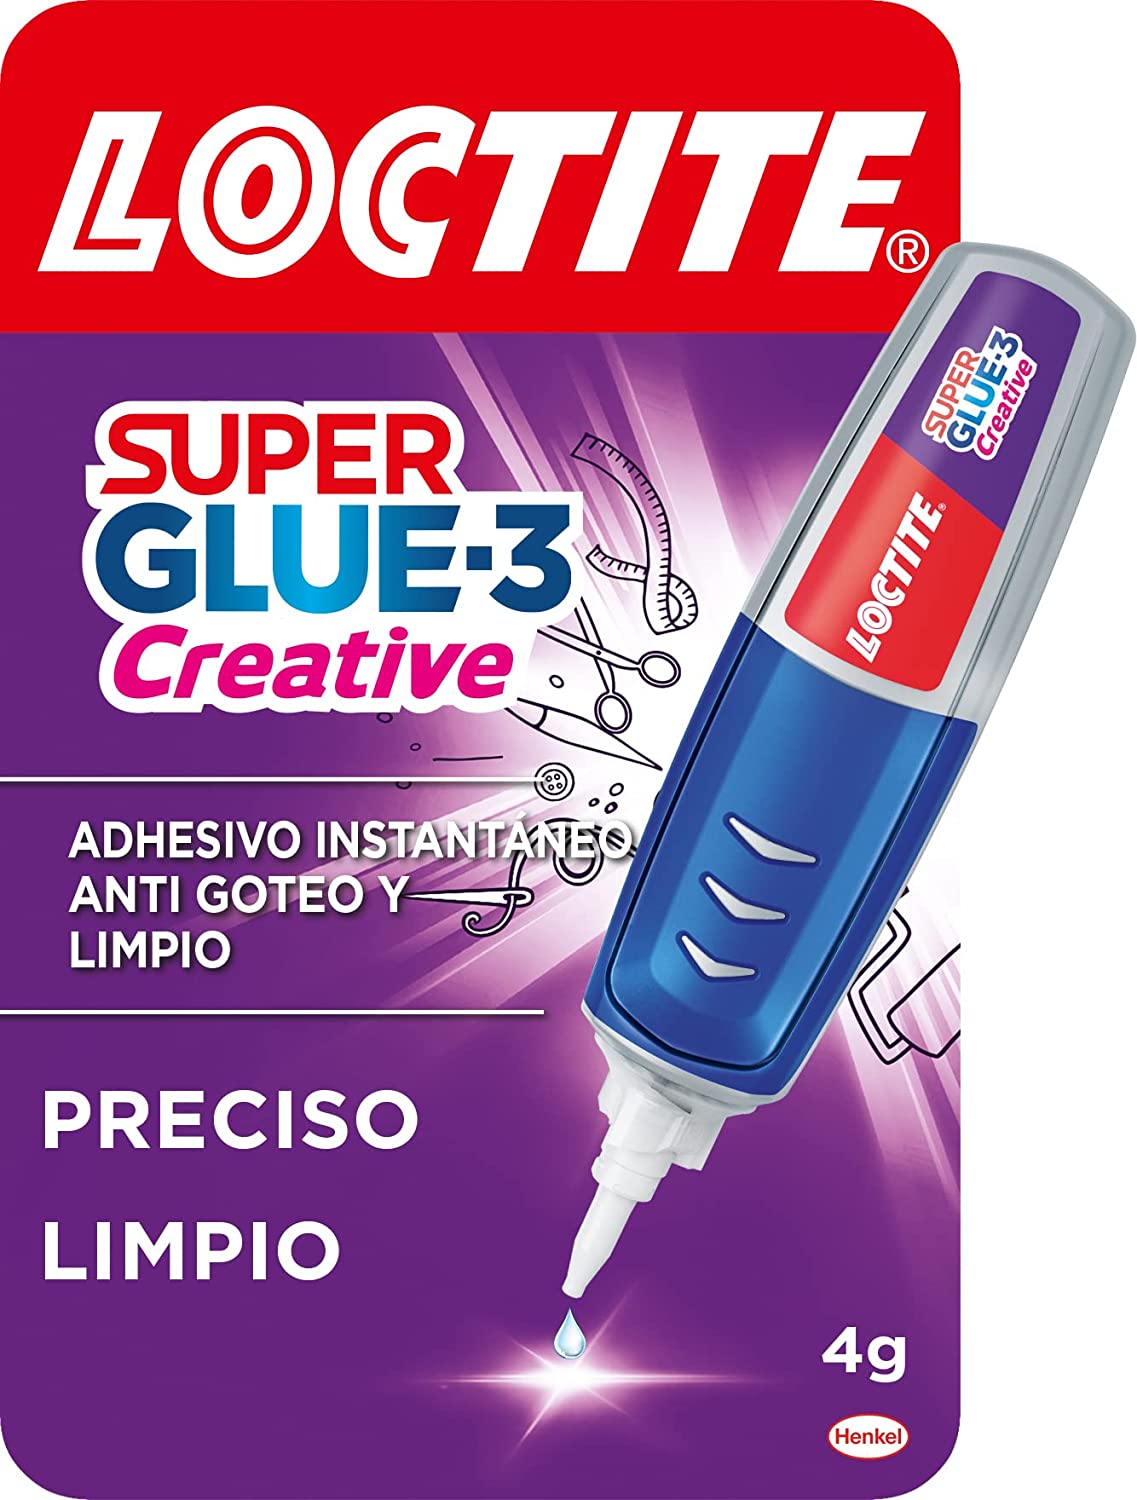 Pegamento LOCTITE Super Glue-3 Perfect Pen 4g